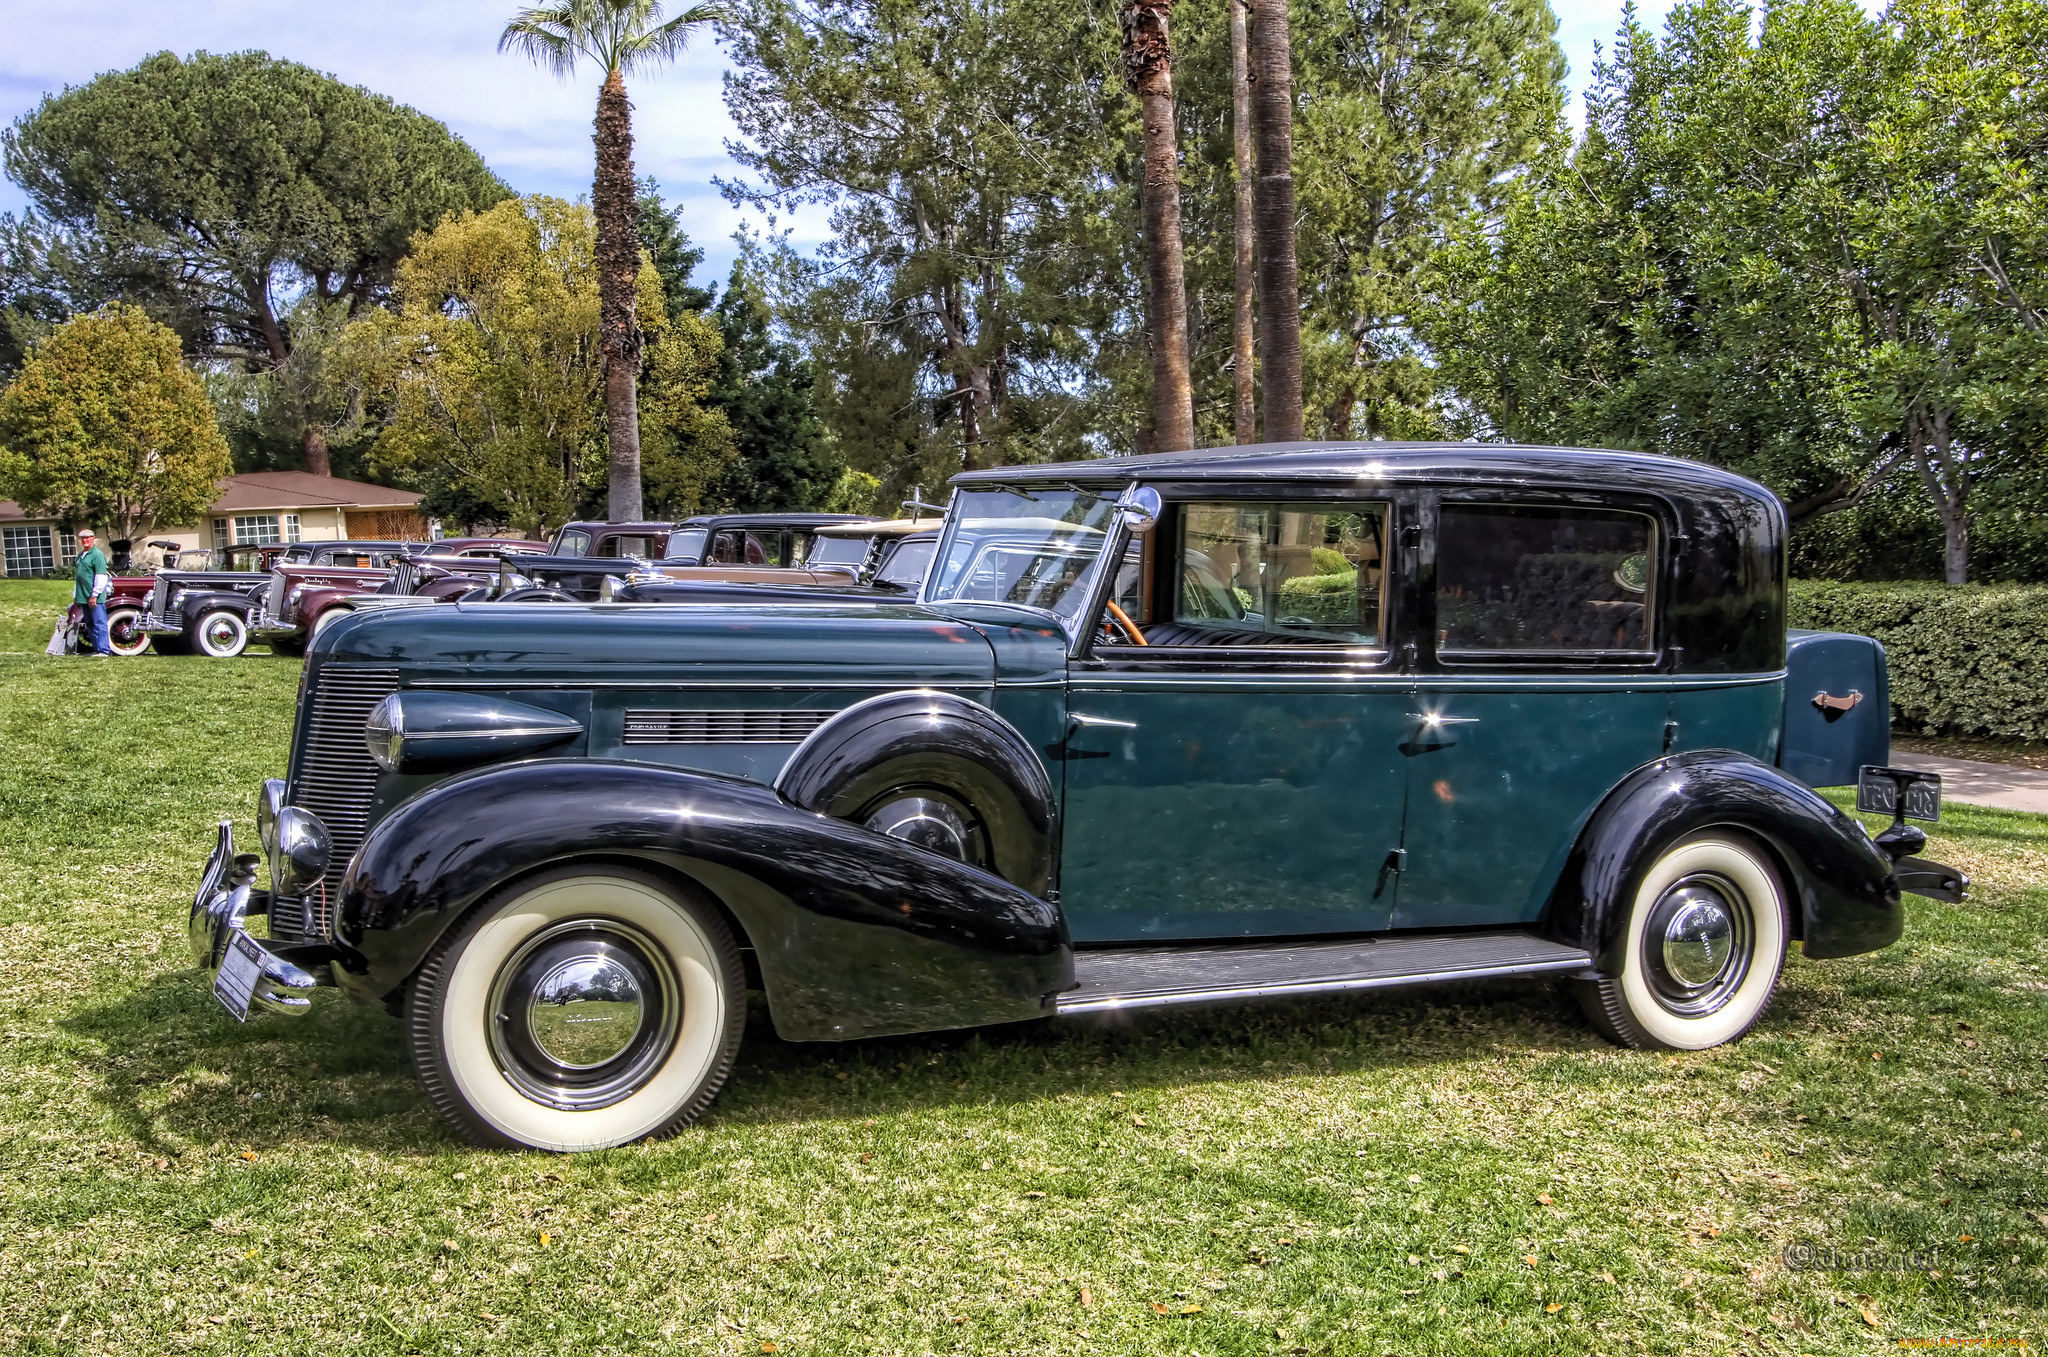 1937, buick, brewster, limousine, автомобили, выставки, и, уличные, фото, автошоу, выставка